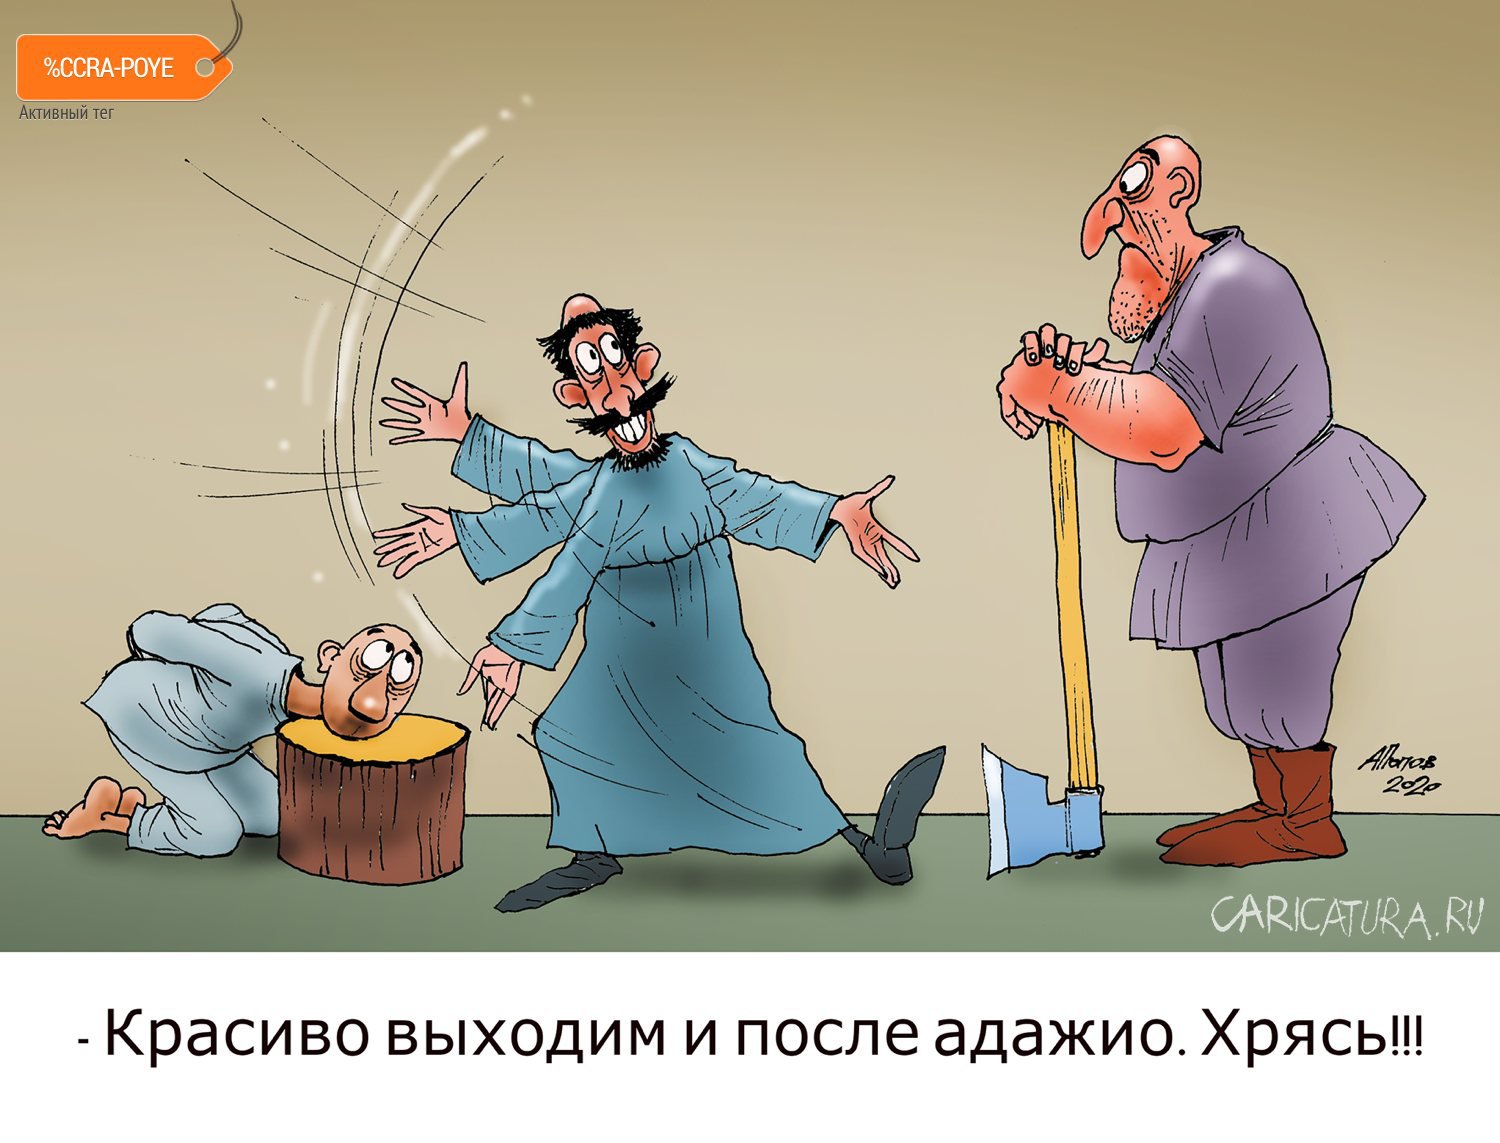 Карикатура "Хореограф", Александр Попов